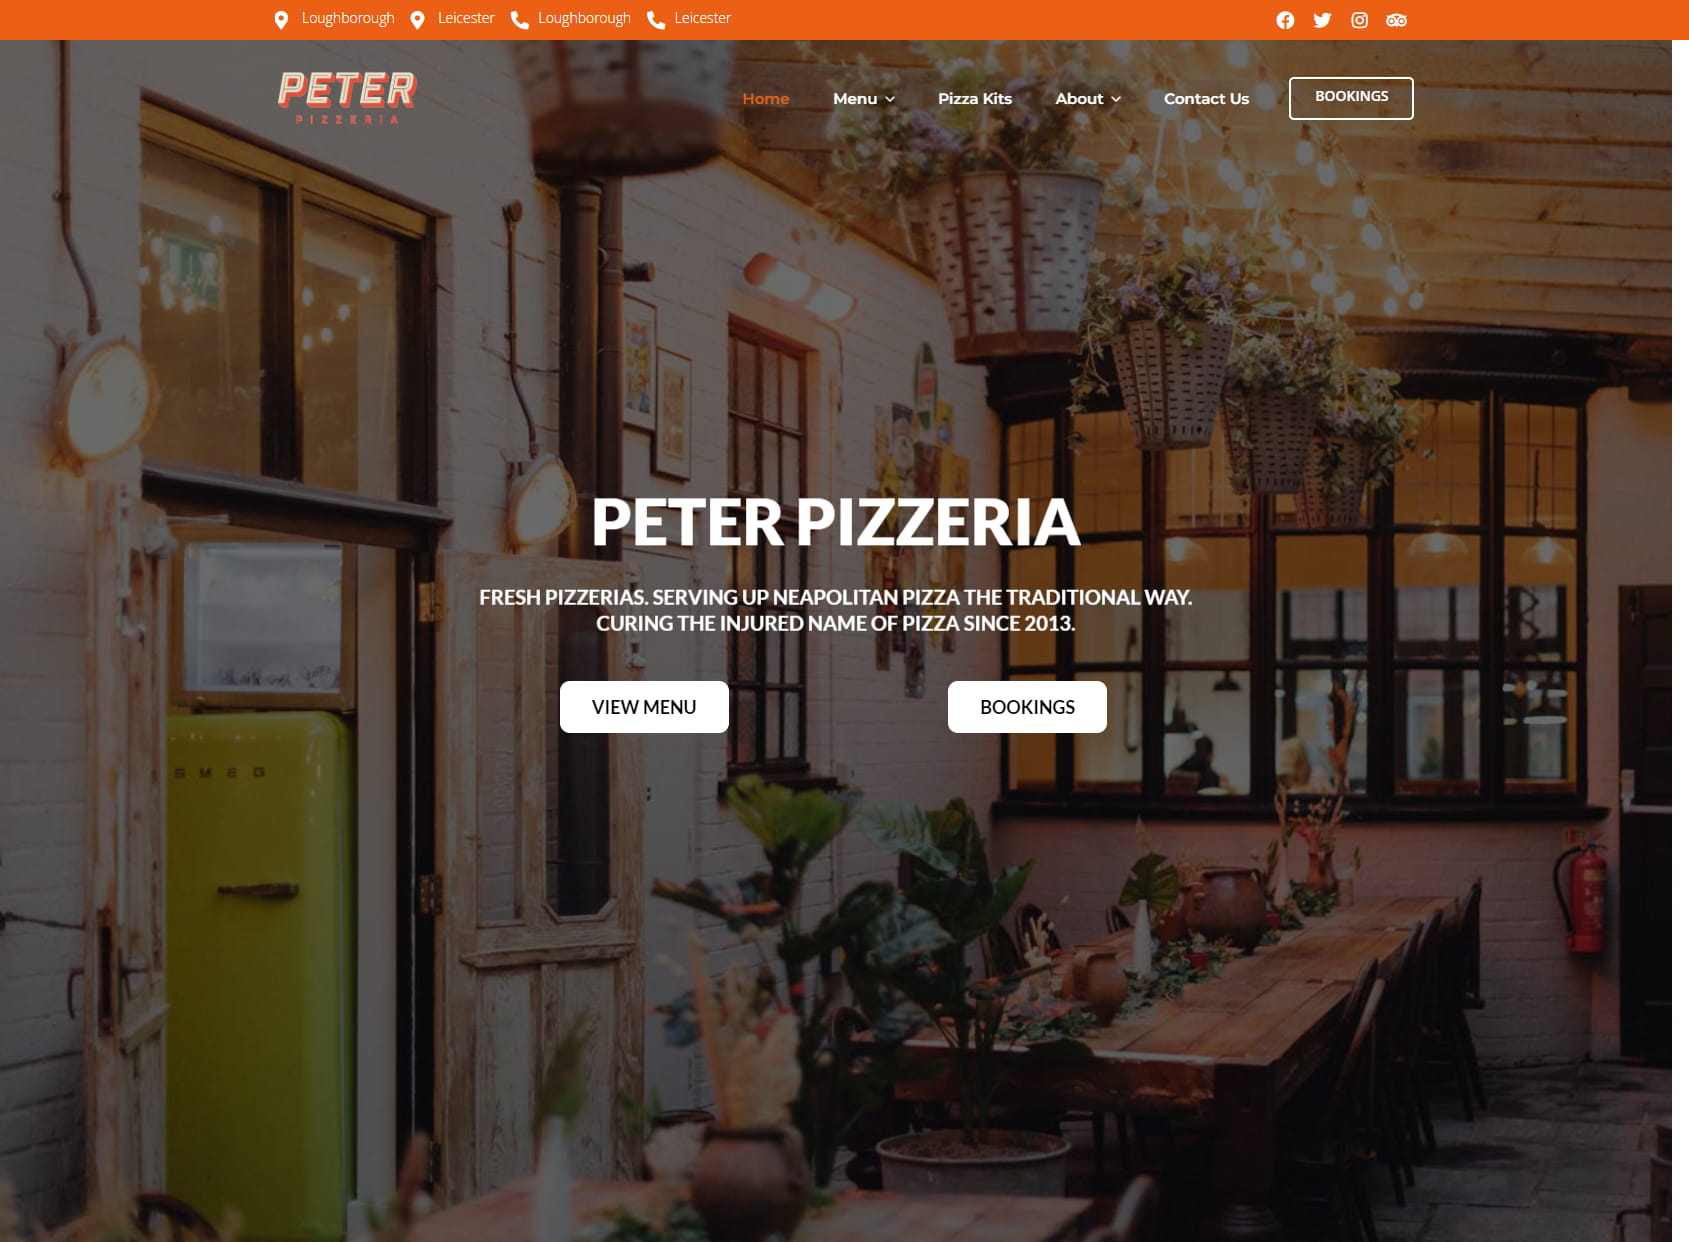 Peter Pizzeria